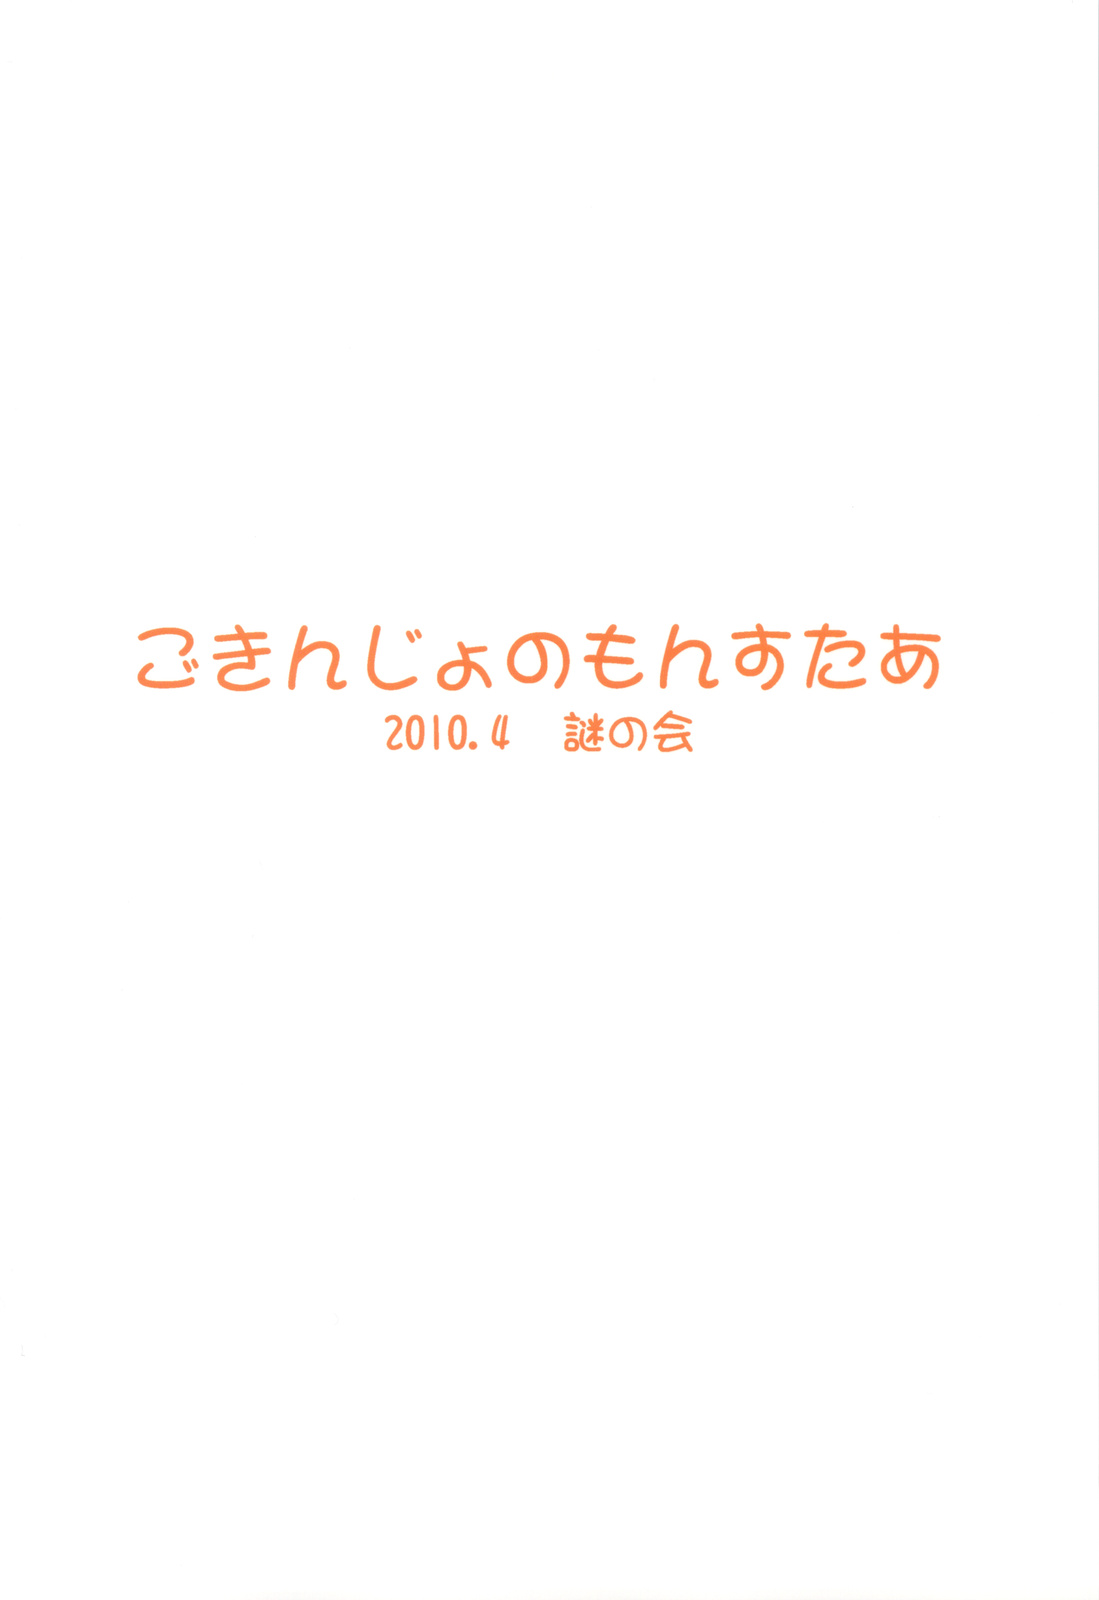 (COMIC1☆4) [Nazonokai (Mitamori Tatsuya)] Gokinjyo no Monster 2 (Original) (COMIC1☆4) (同人誌) [謎の会 (みた森たつや)] ごきんじょのもんすたあ その2 (オリジナル)